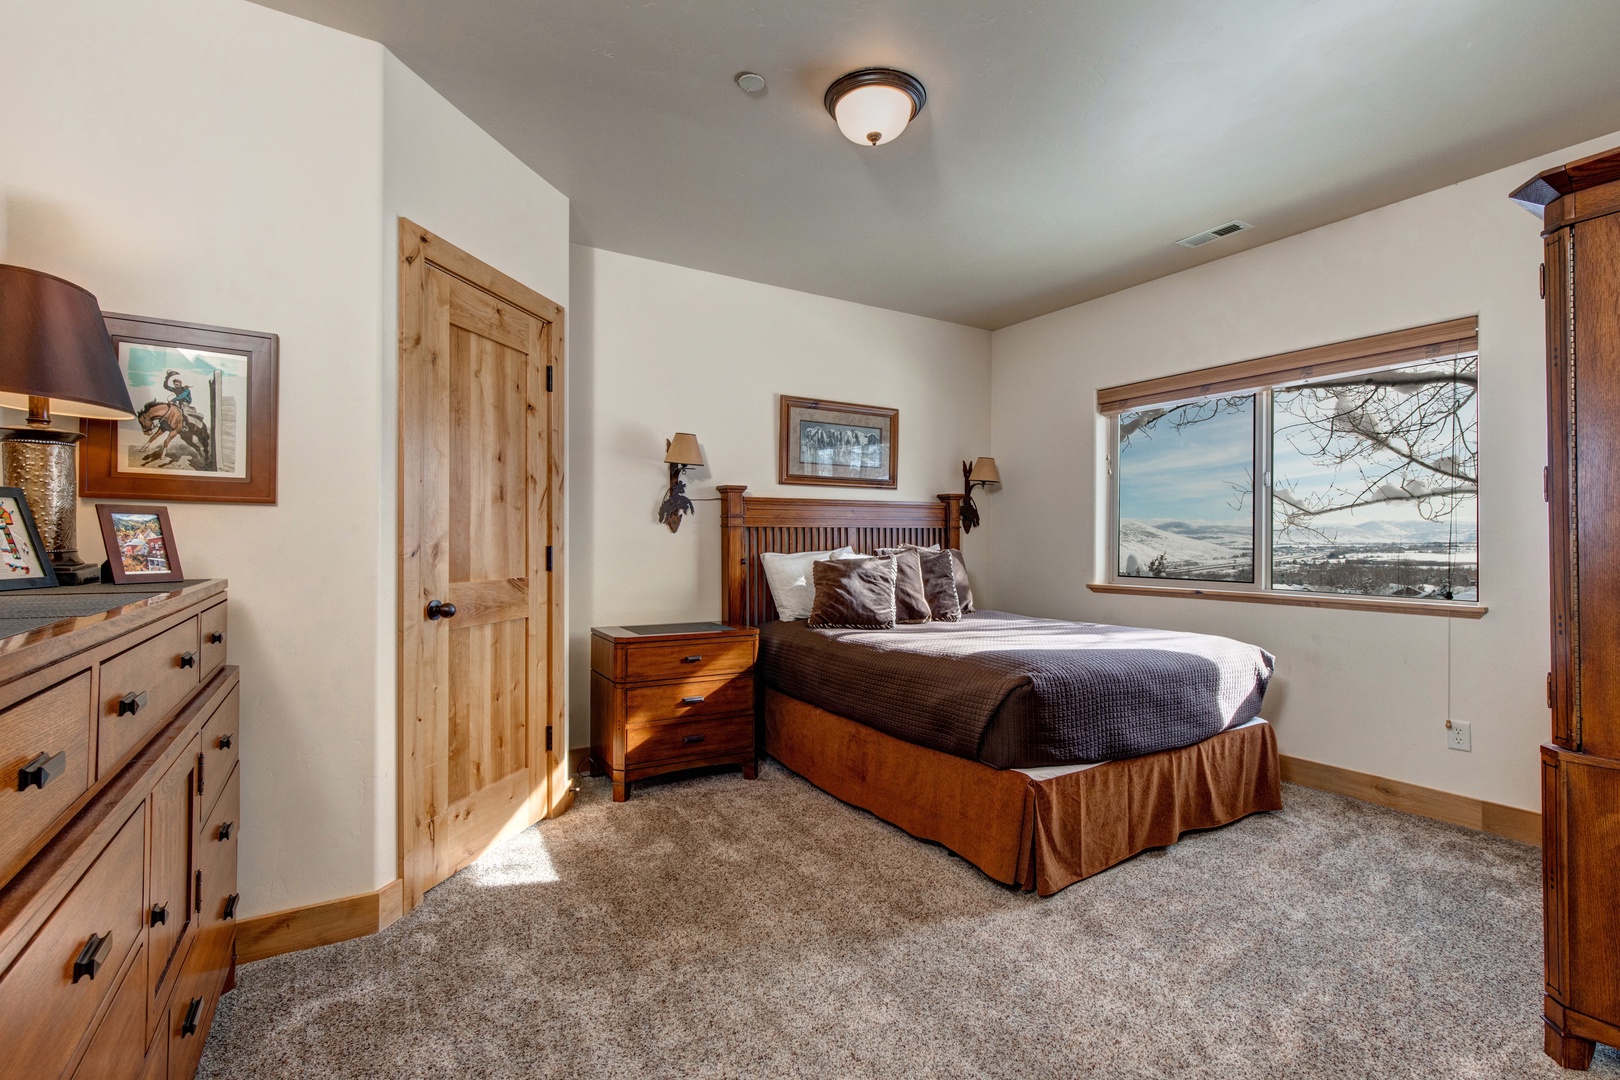 Park City Vacation Rentals, Cedar Ridge Townhouse - Third bedroom with queen